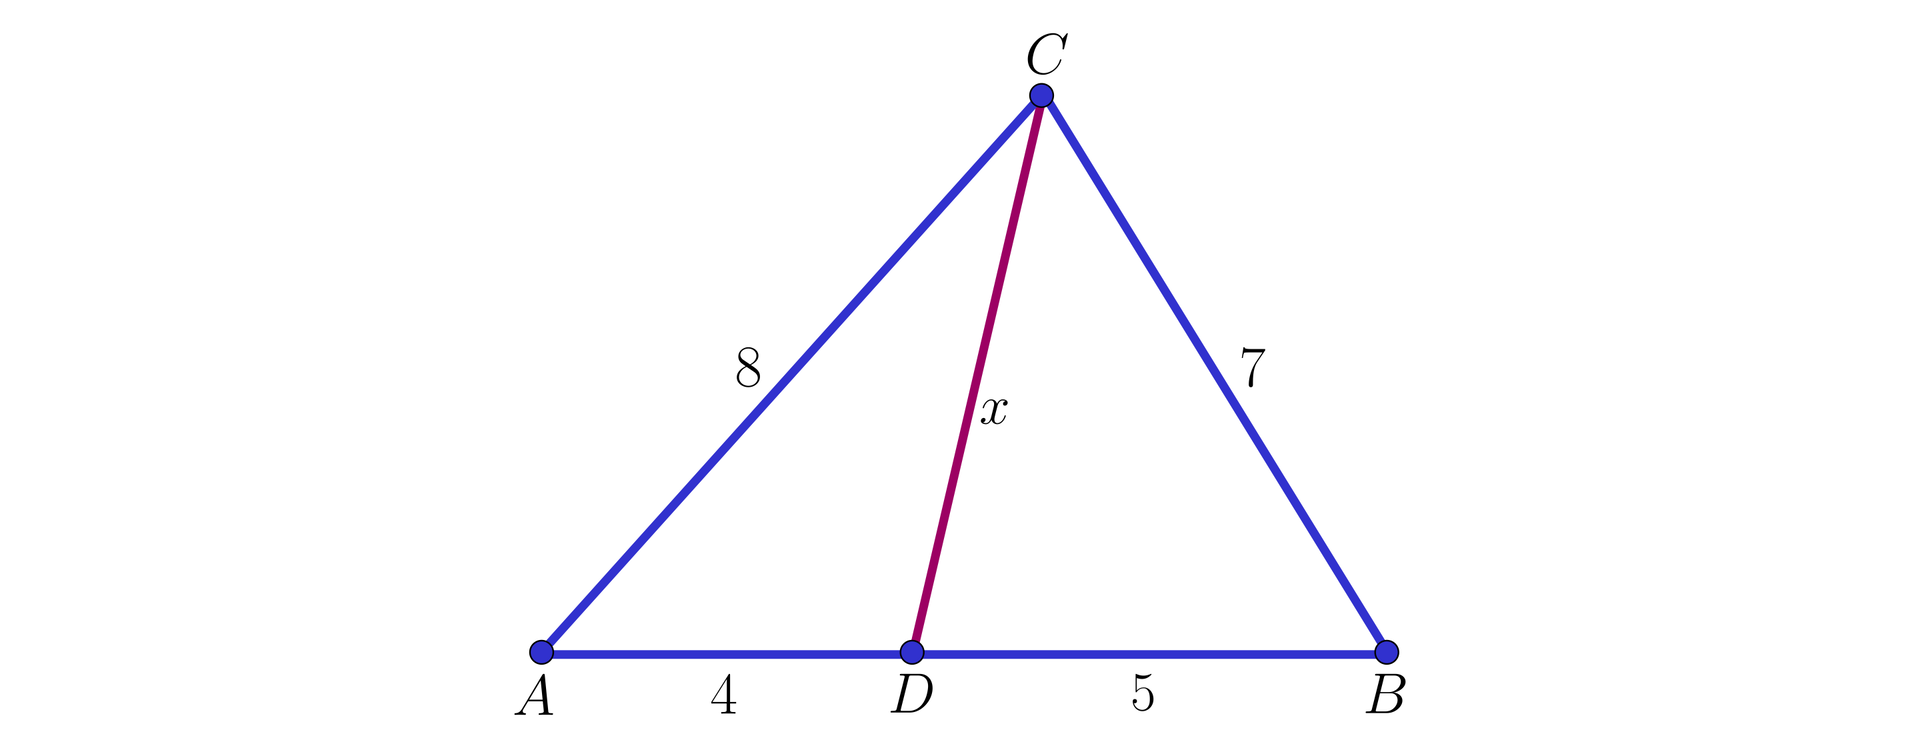 Ilustracja przedstawia trójkąt ABC, długość boku AC ma miarę 8, a długość boku BC ma miarę 7 z wierzchołka C poprowadzono prostą x na podstawę tworząc punkt D, który dzieli podstawę AB  na odcinki AD równe 4 oraz BD równe 5